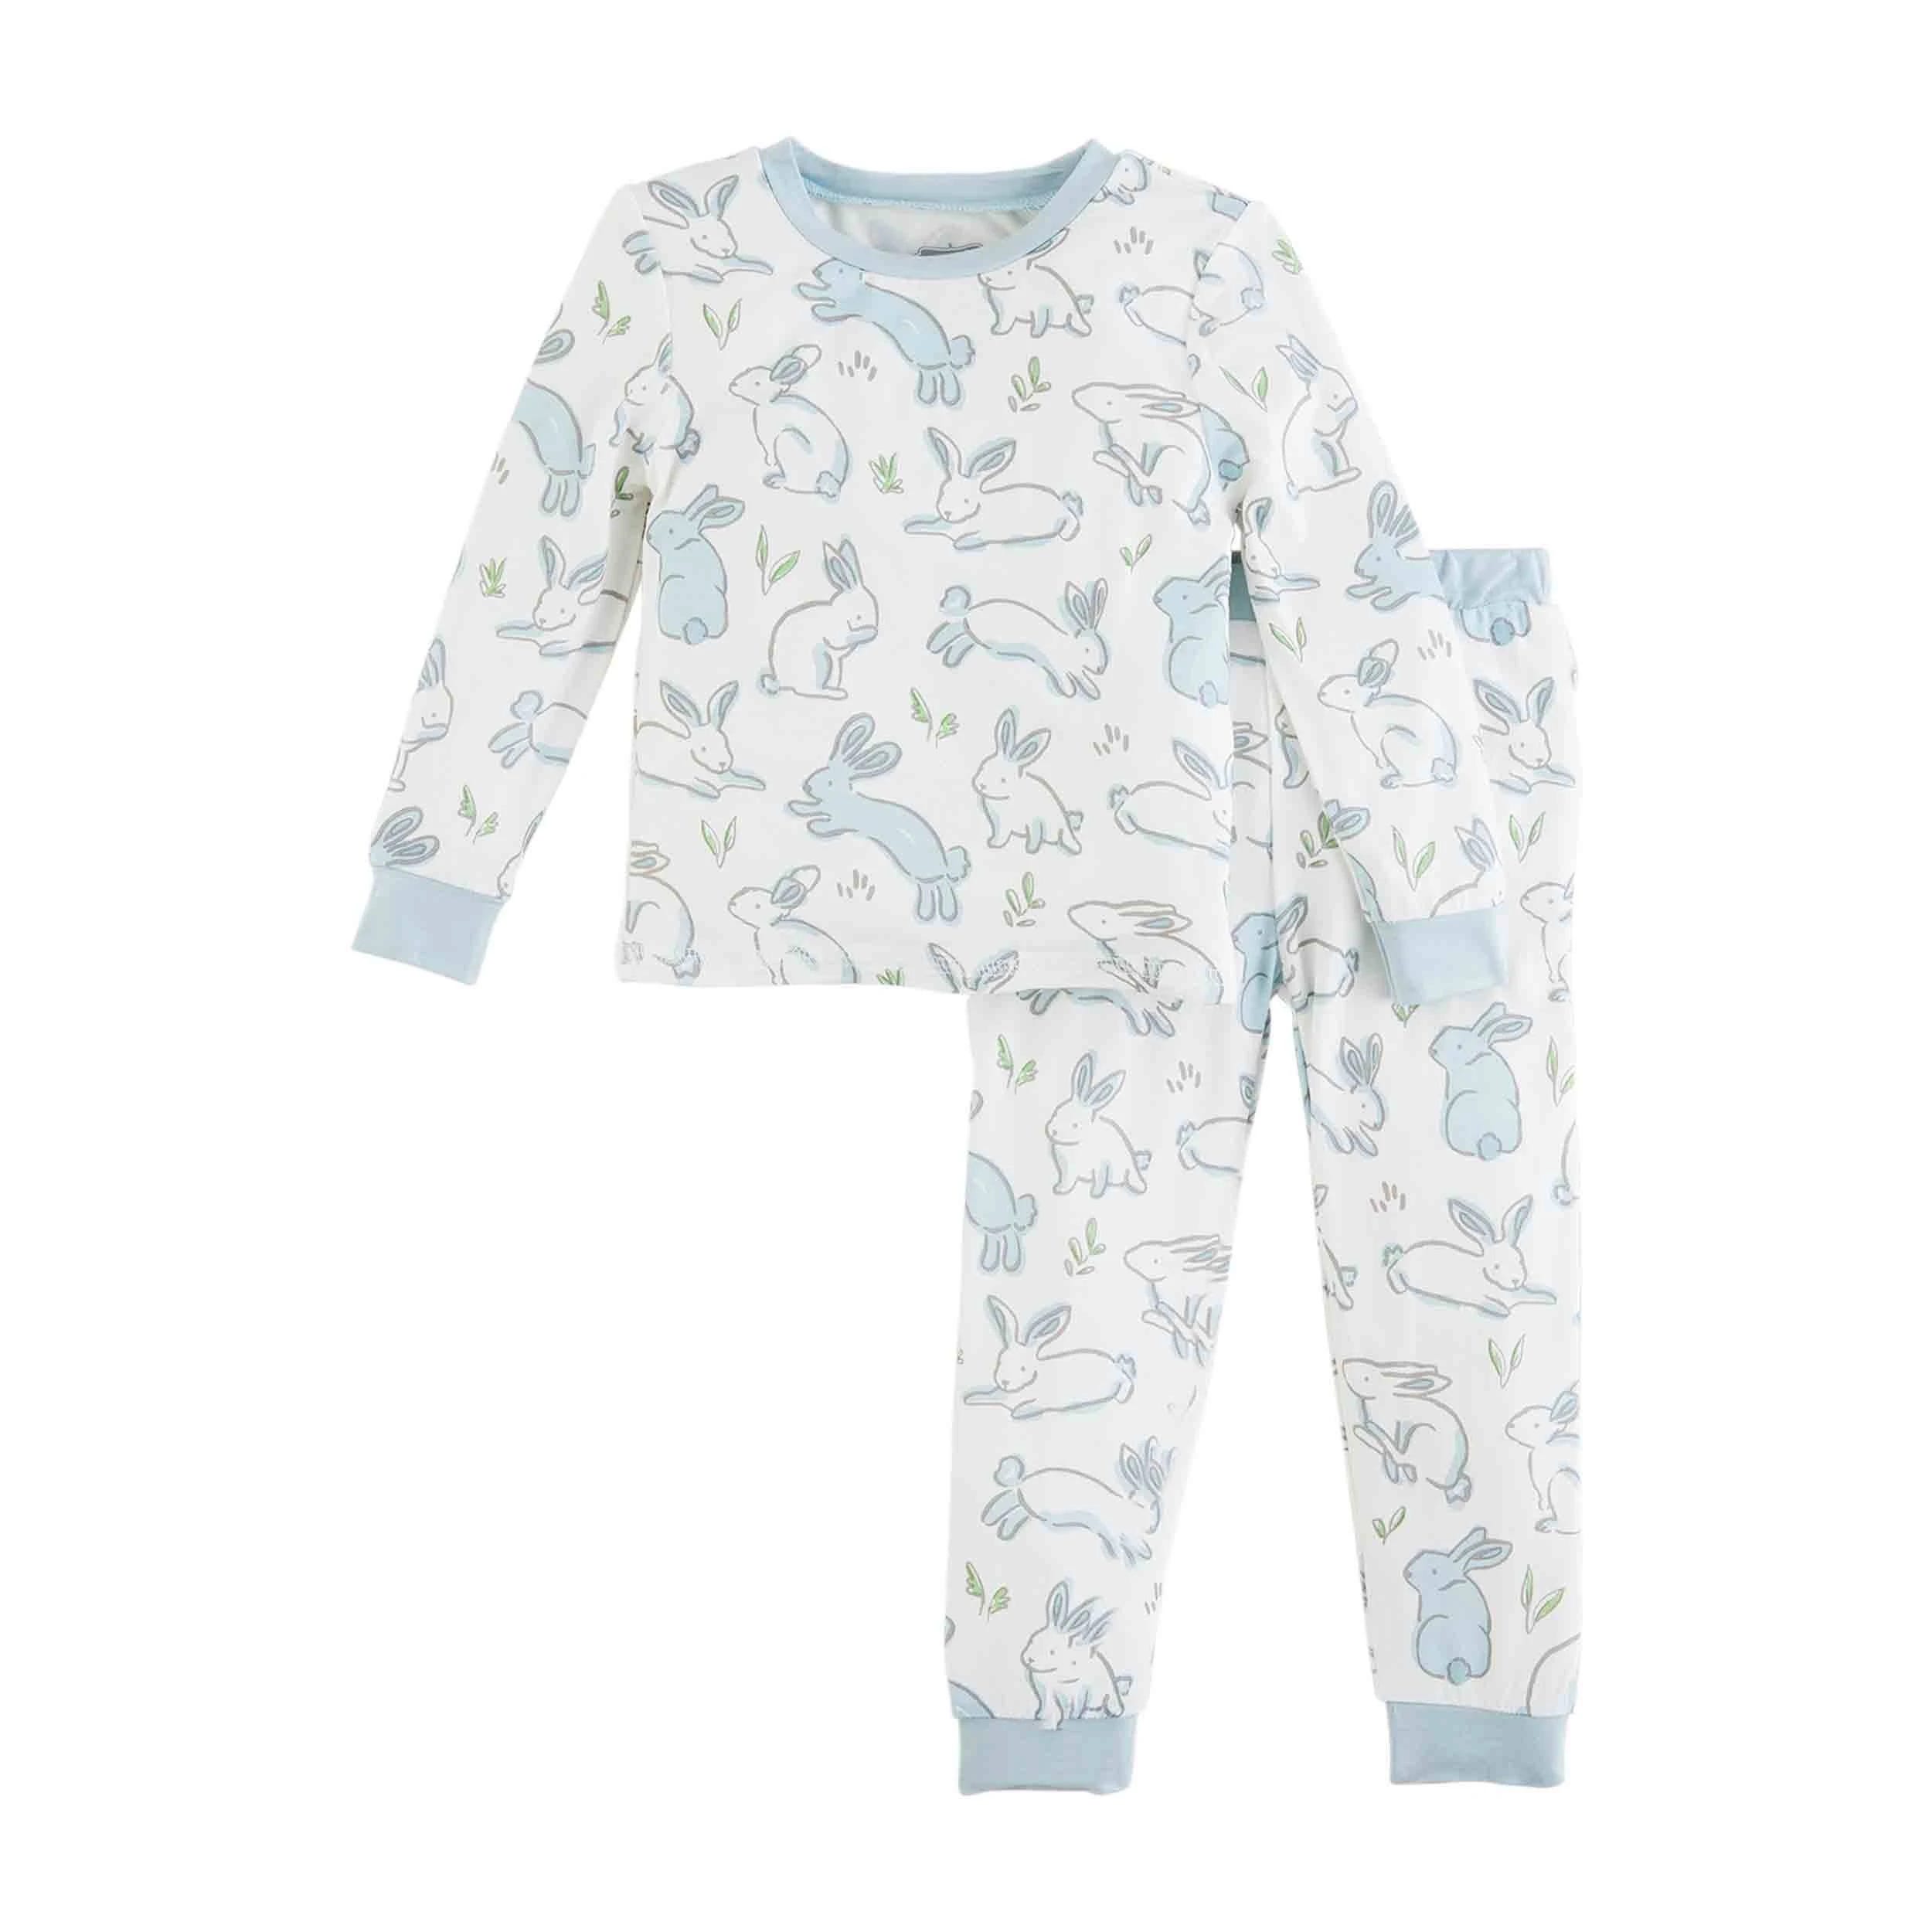 Adorable Blue Bunny Easter Pajama Set | Image